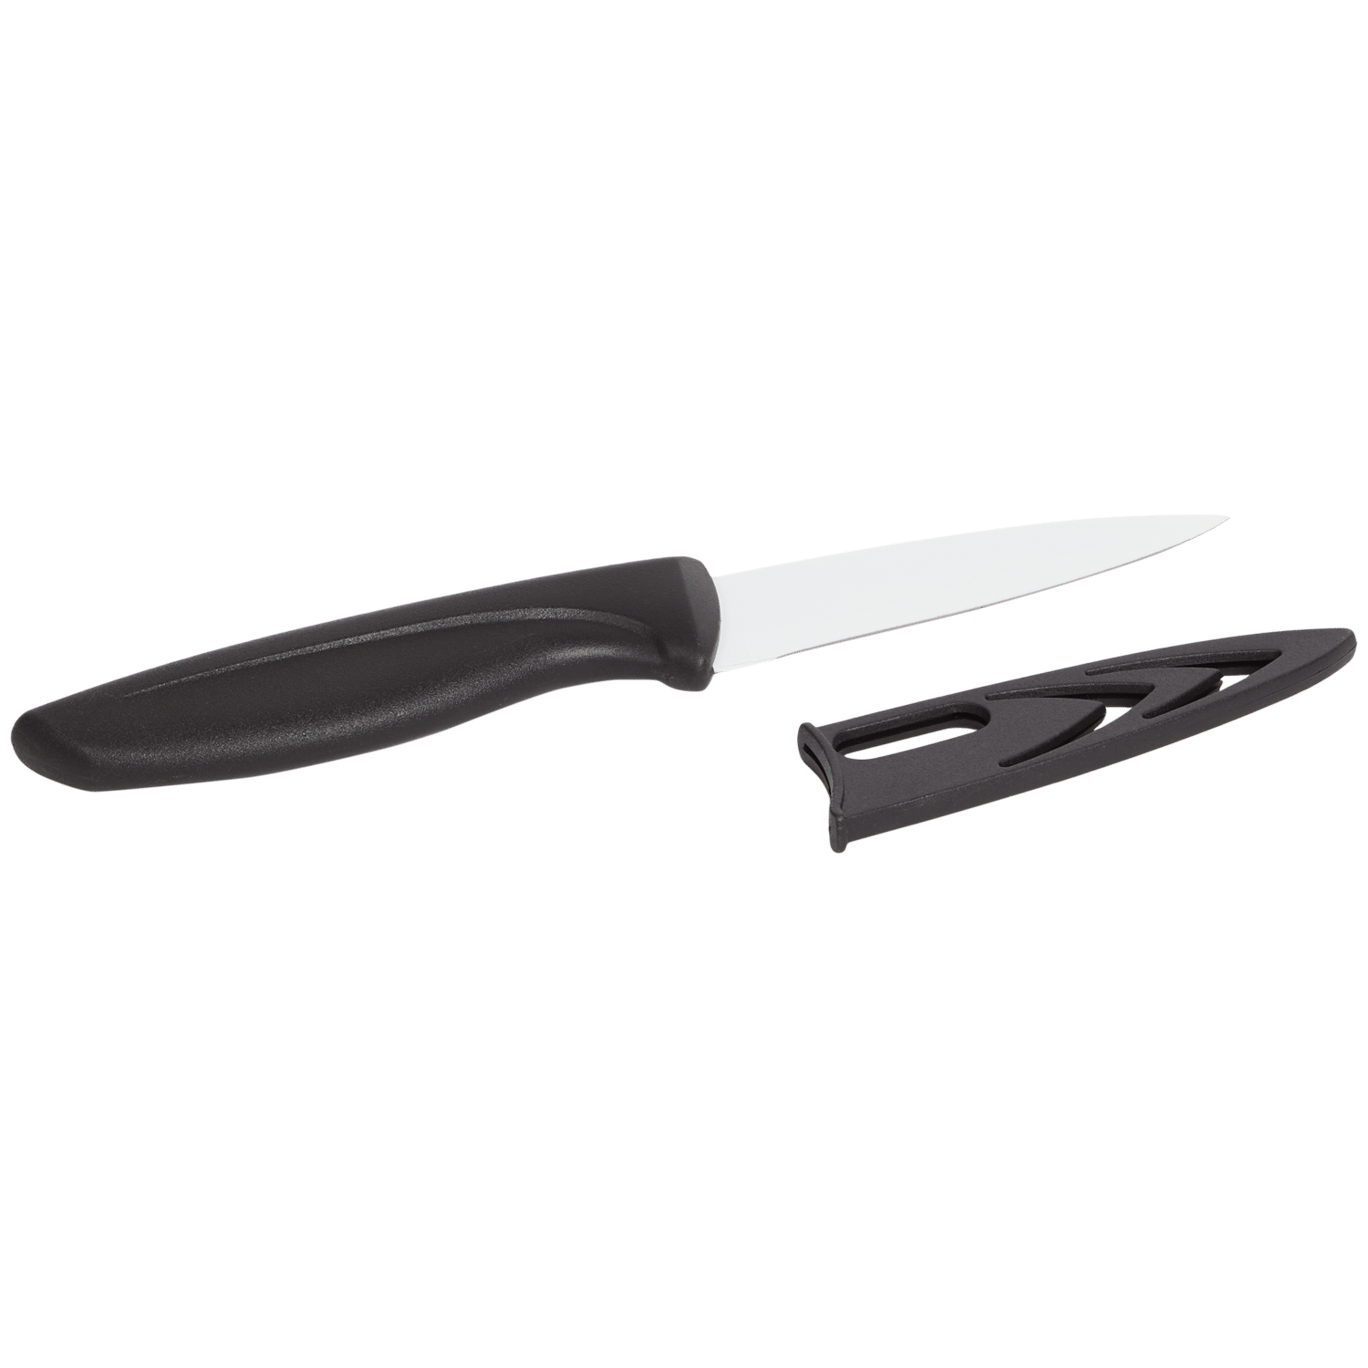 Kuchynský nôž Redstone